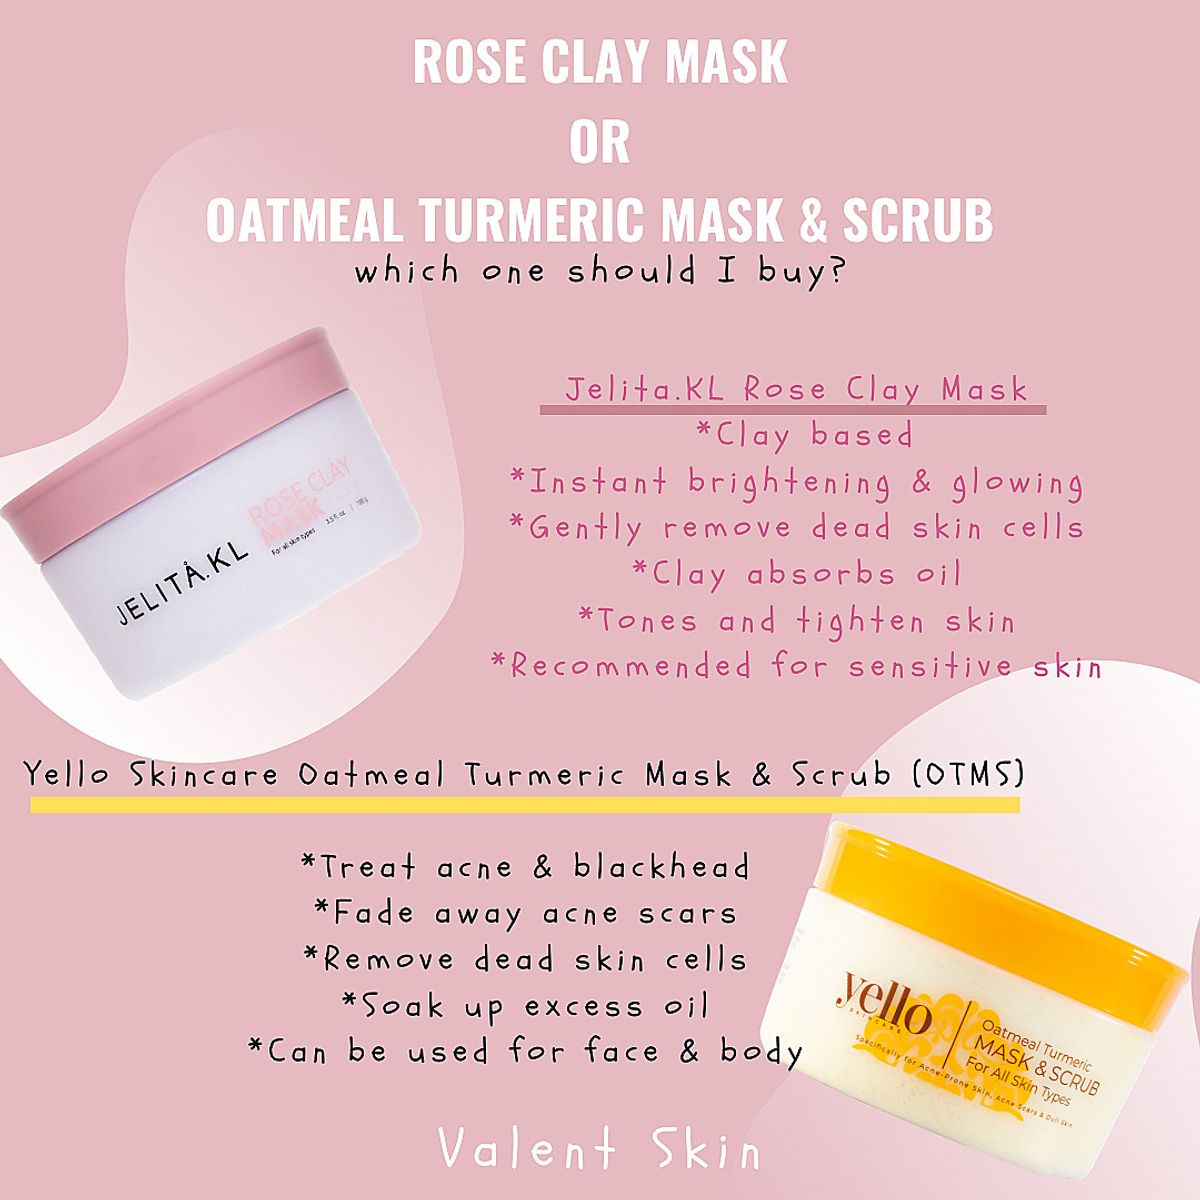 Rose Clay Mask Vs. Oatmeal Turmeric Mask & Scrub